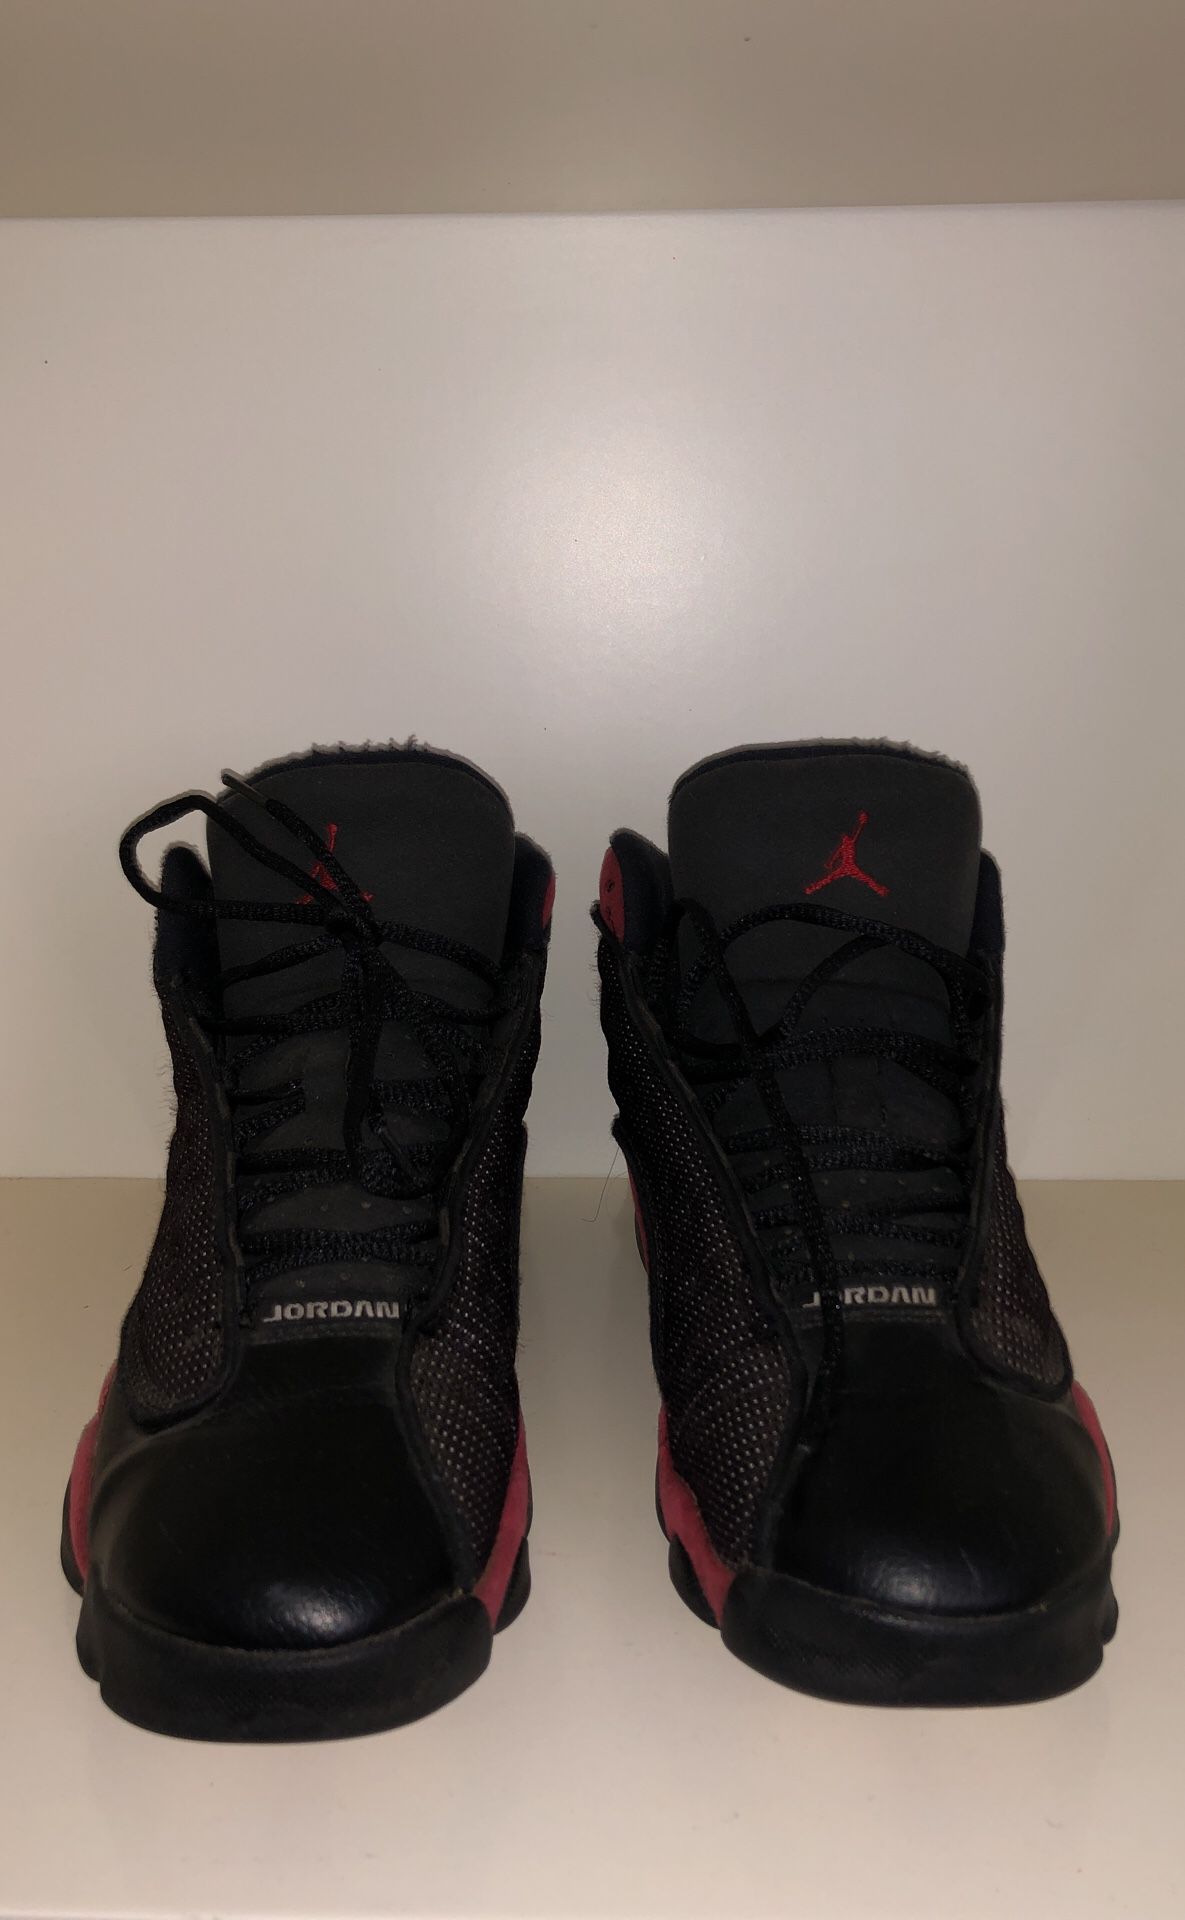 Air Jordan Bred 13 Size 7